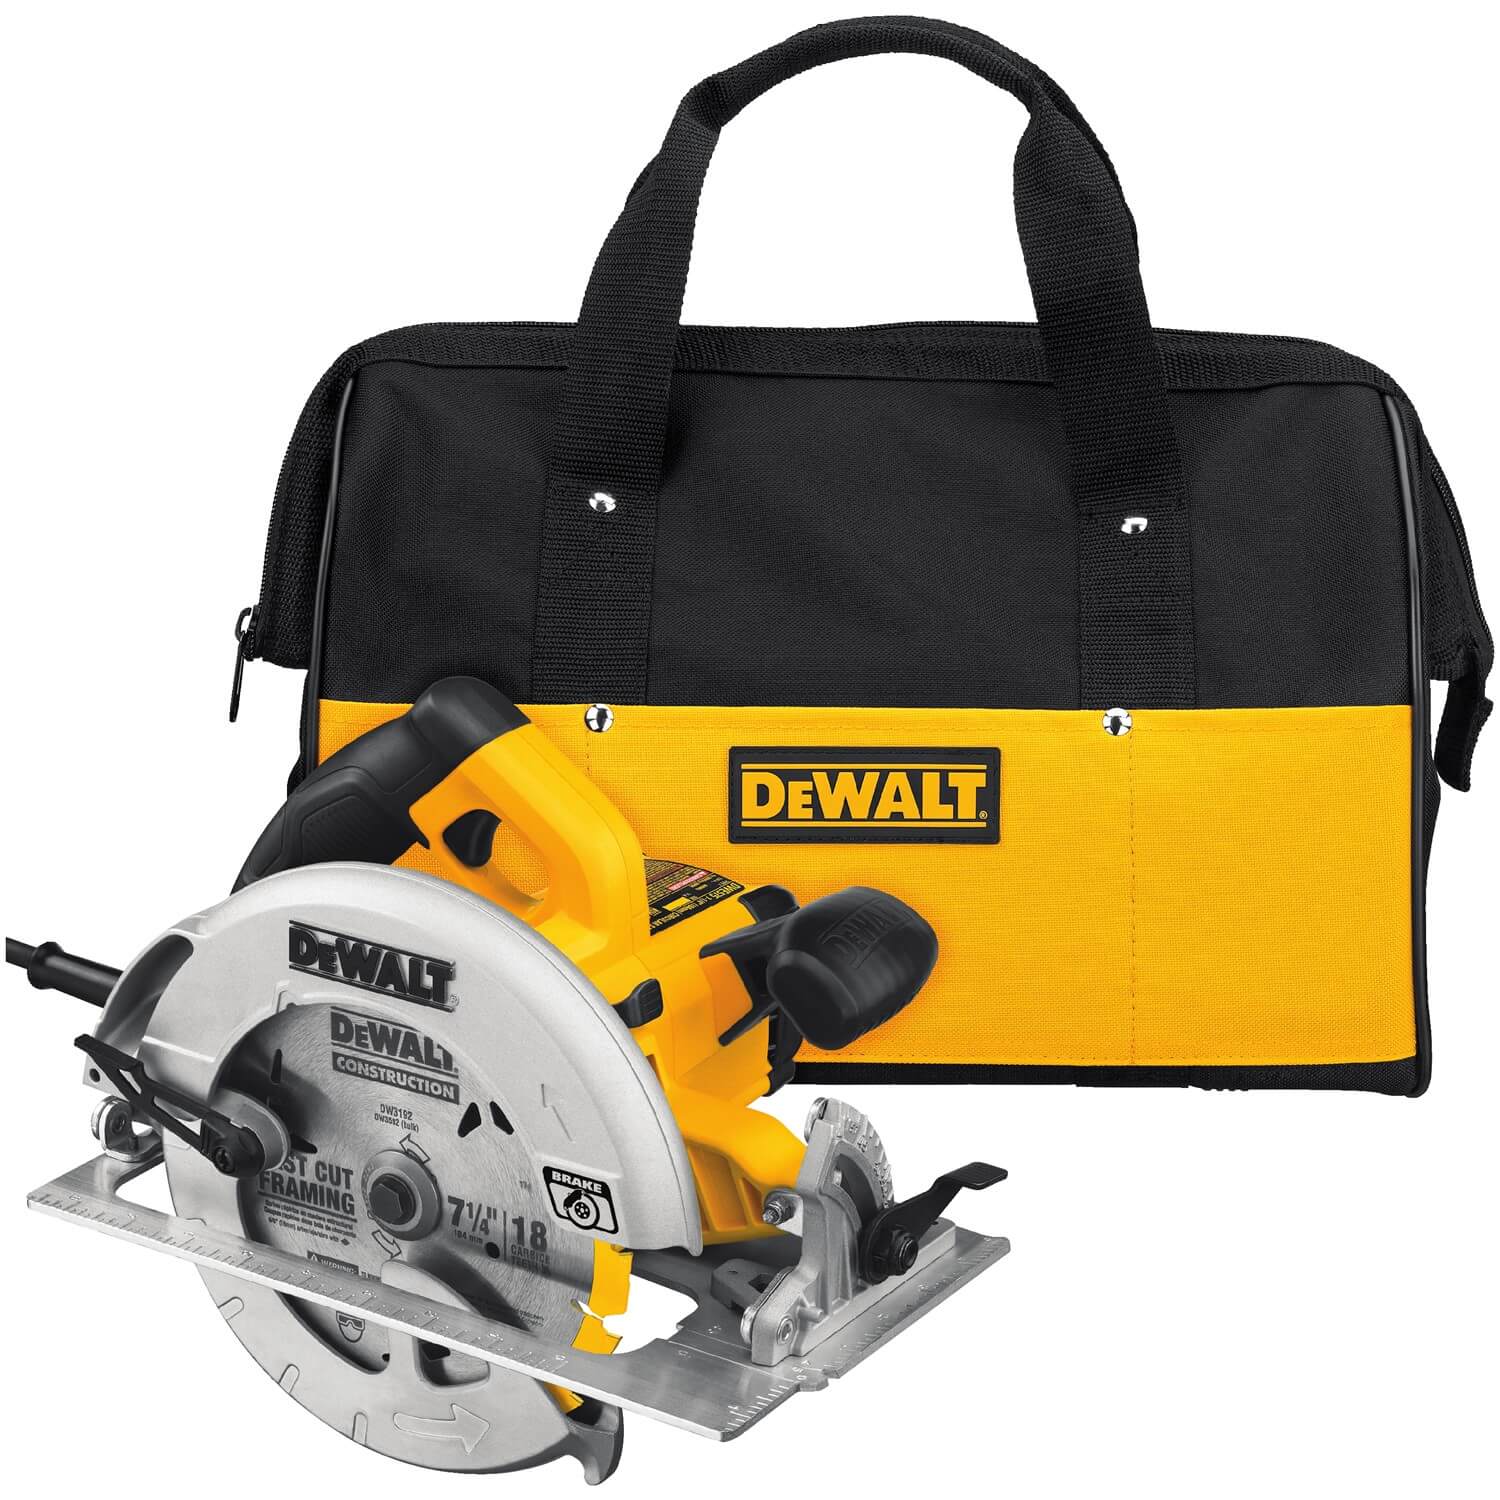 DEWALT DWE575SB - 7-1/4" Circular Saw with Electric Brake - wise-line-tools